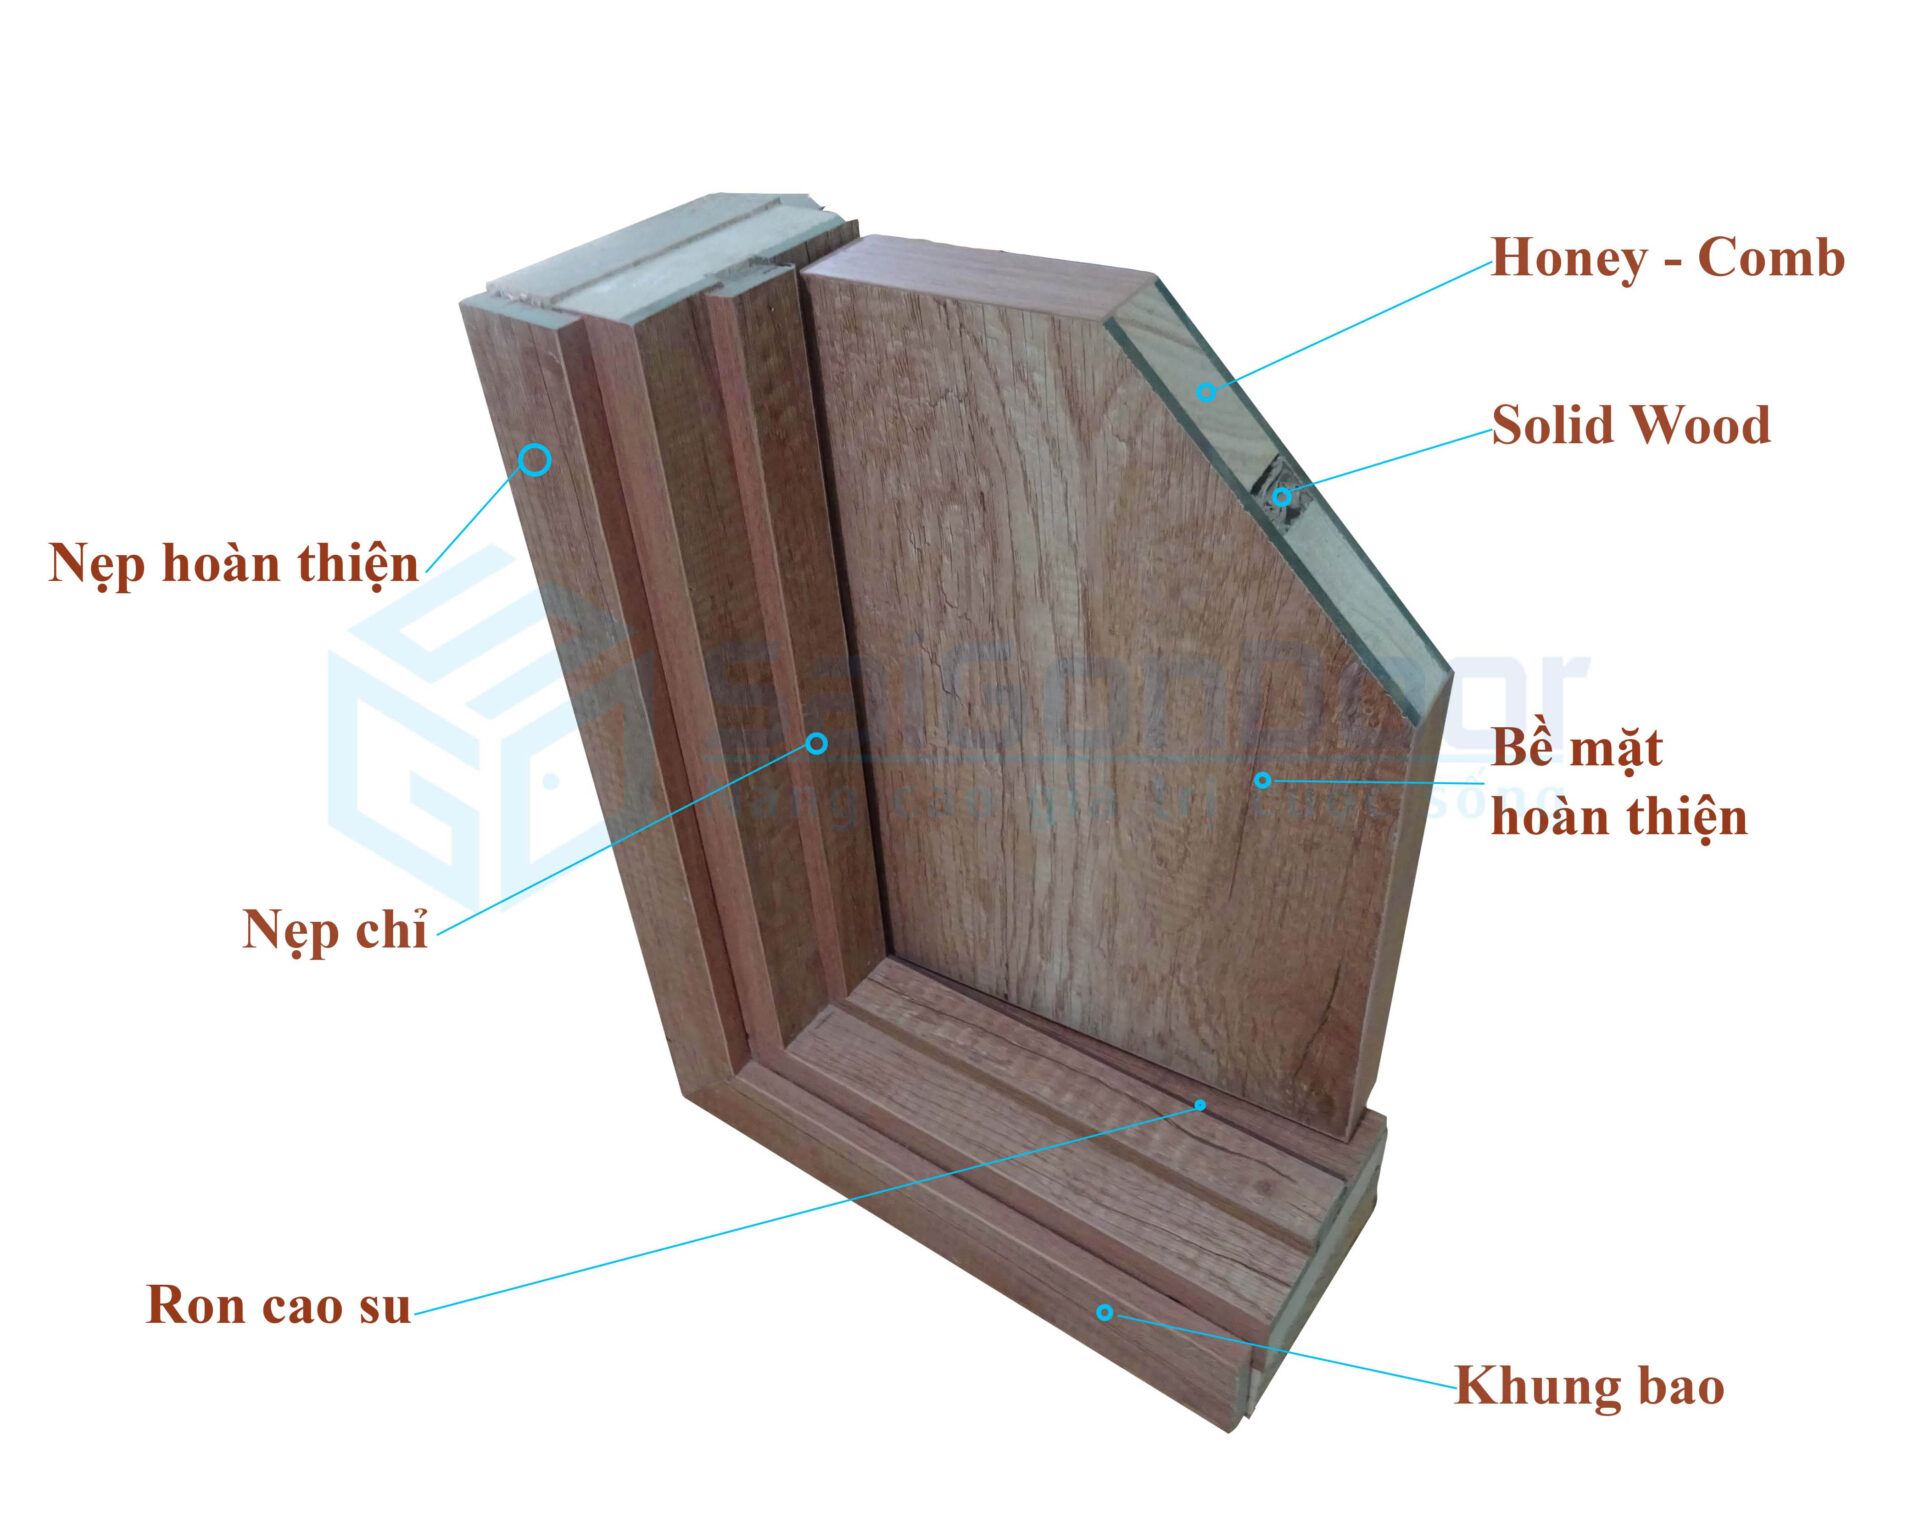 Mặt cắt góc cấu tạo cửa gỗ công nghiệp Laminate với lõi xanh chống ẩm và Honey - Comb cách nhiệt